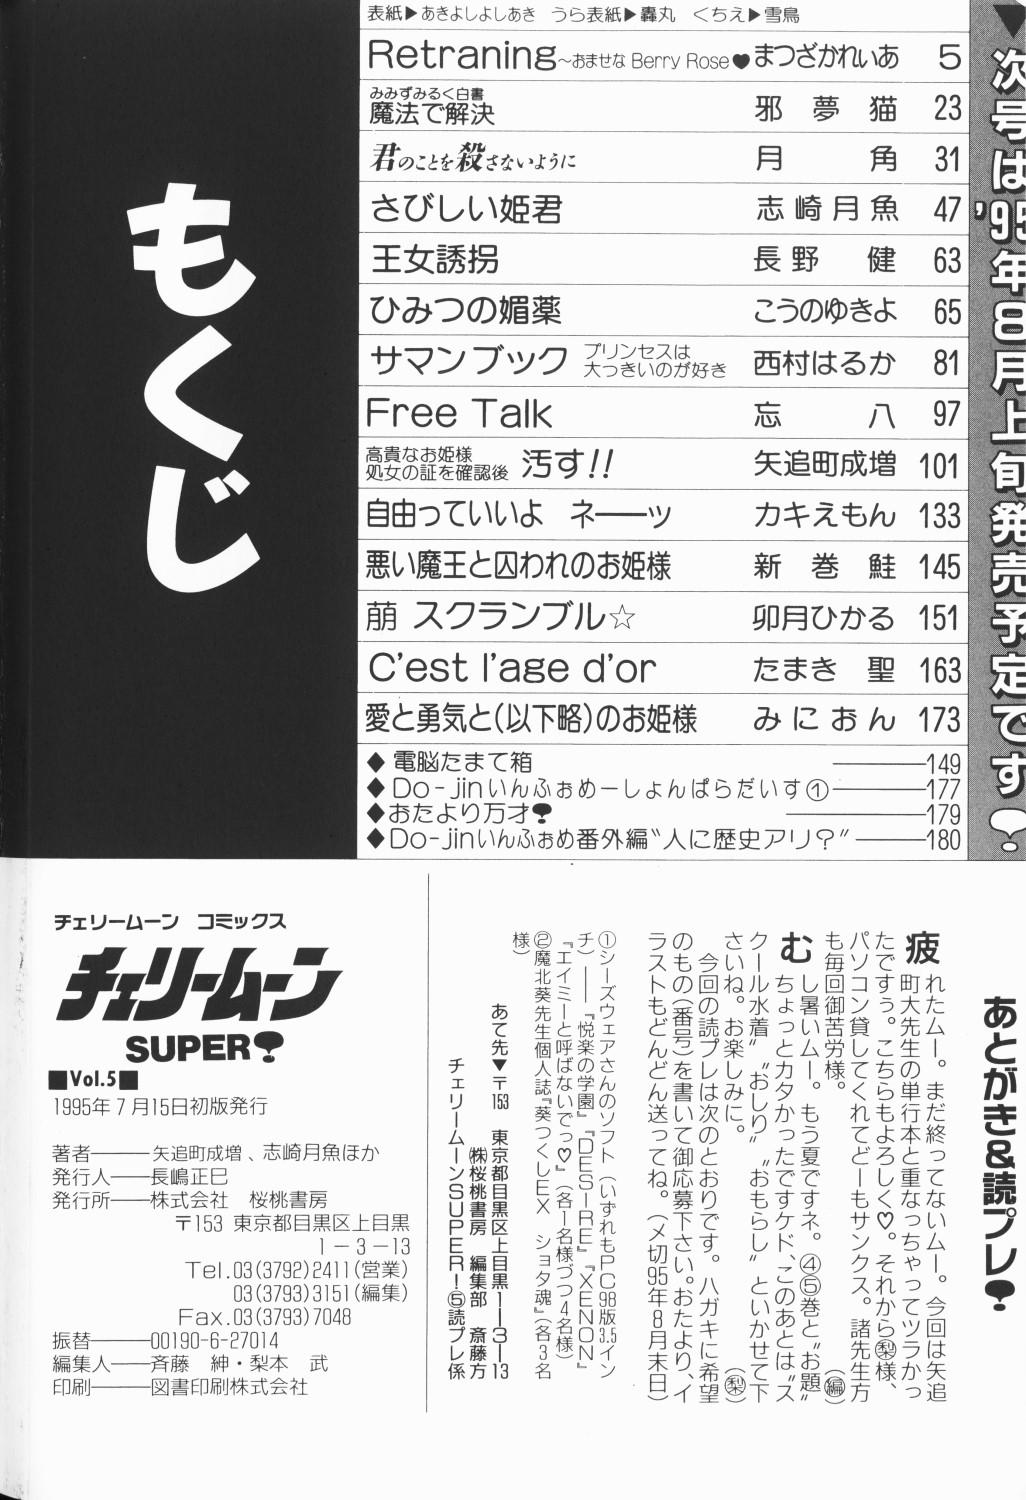 Cherry Moon SUPER! Vol. 5 183